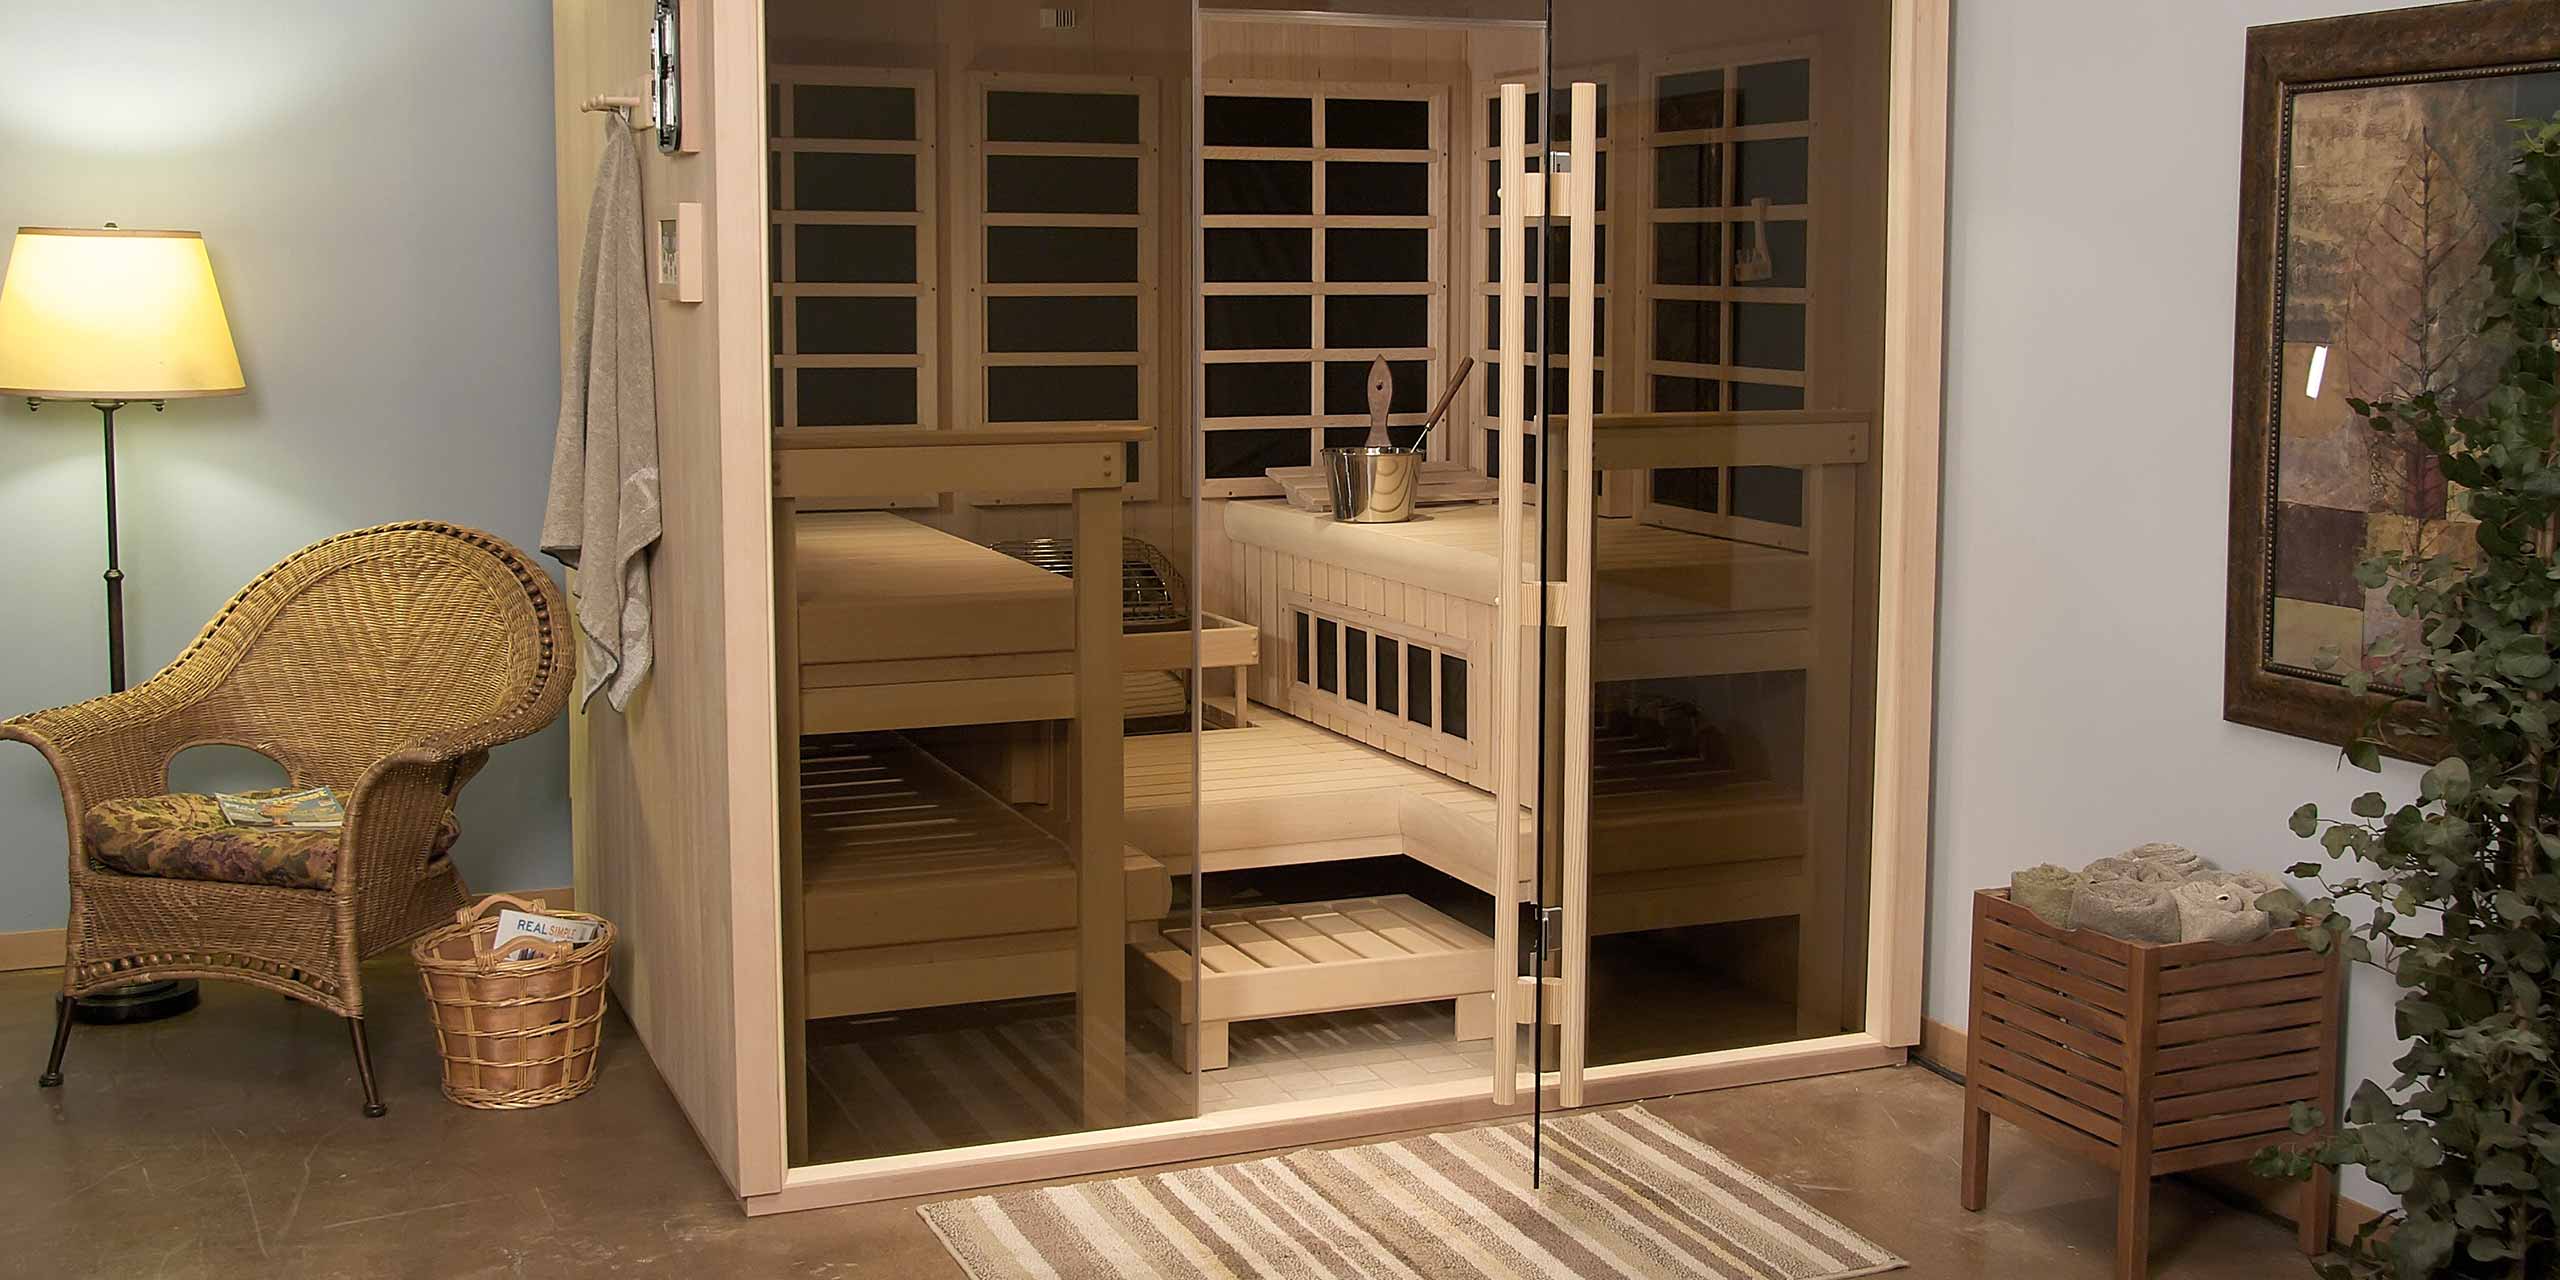 sauna in a room